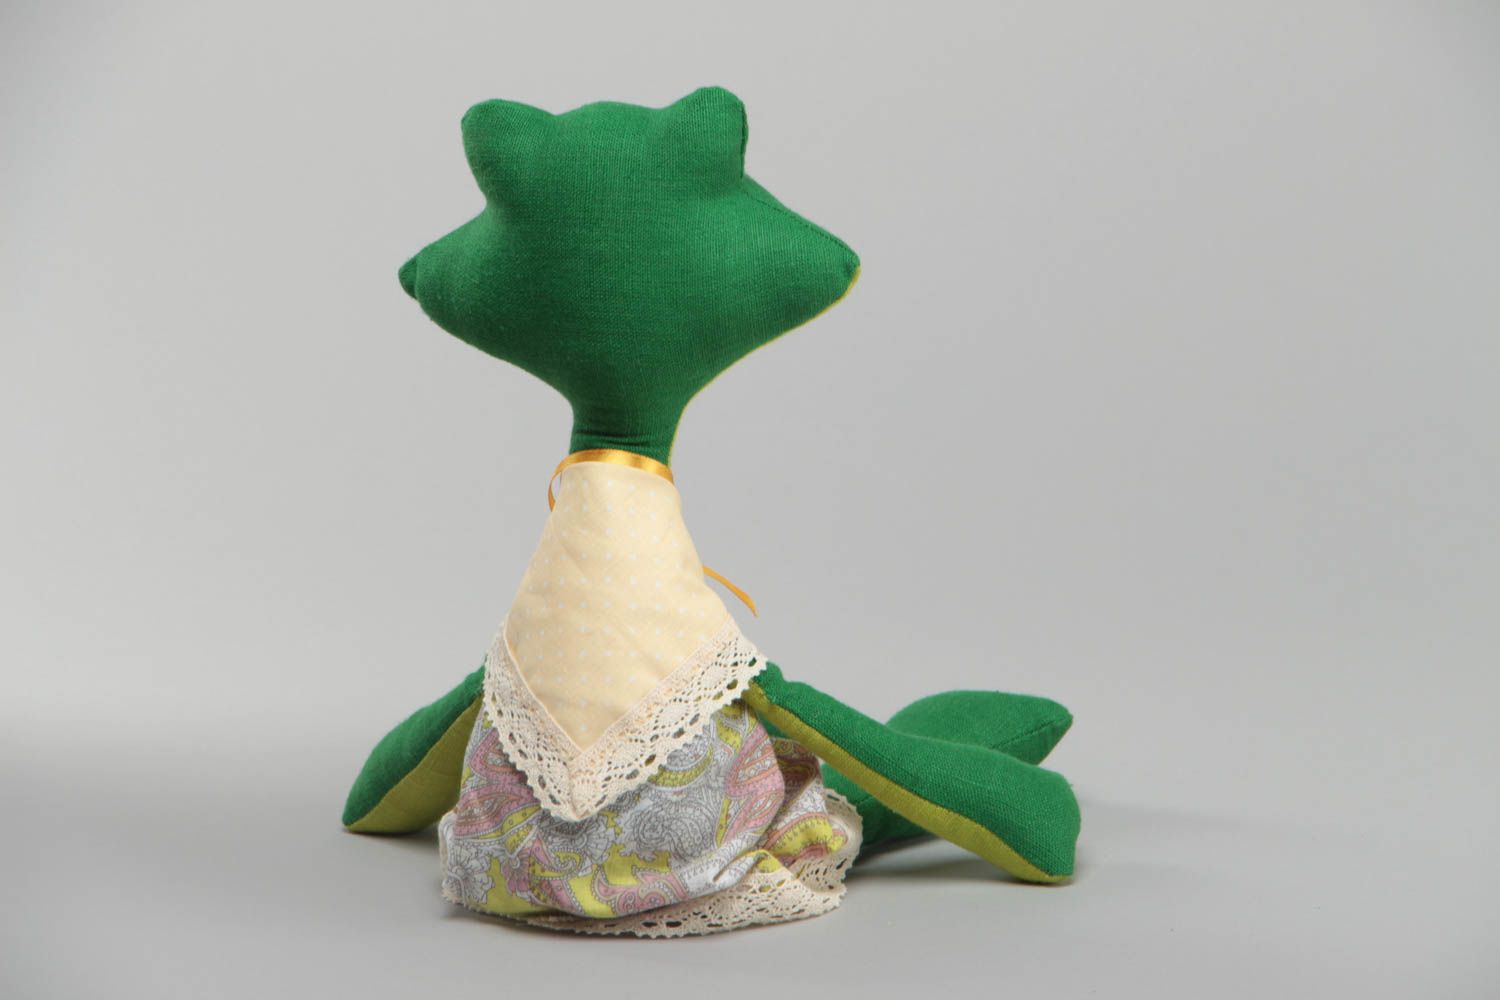 Тканевая игрушка Лягушка зеленая расписанная акриловыми красками ручной работы фото 4